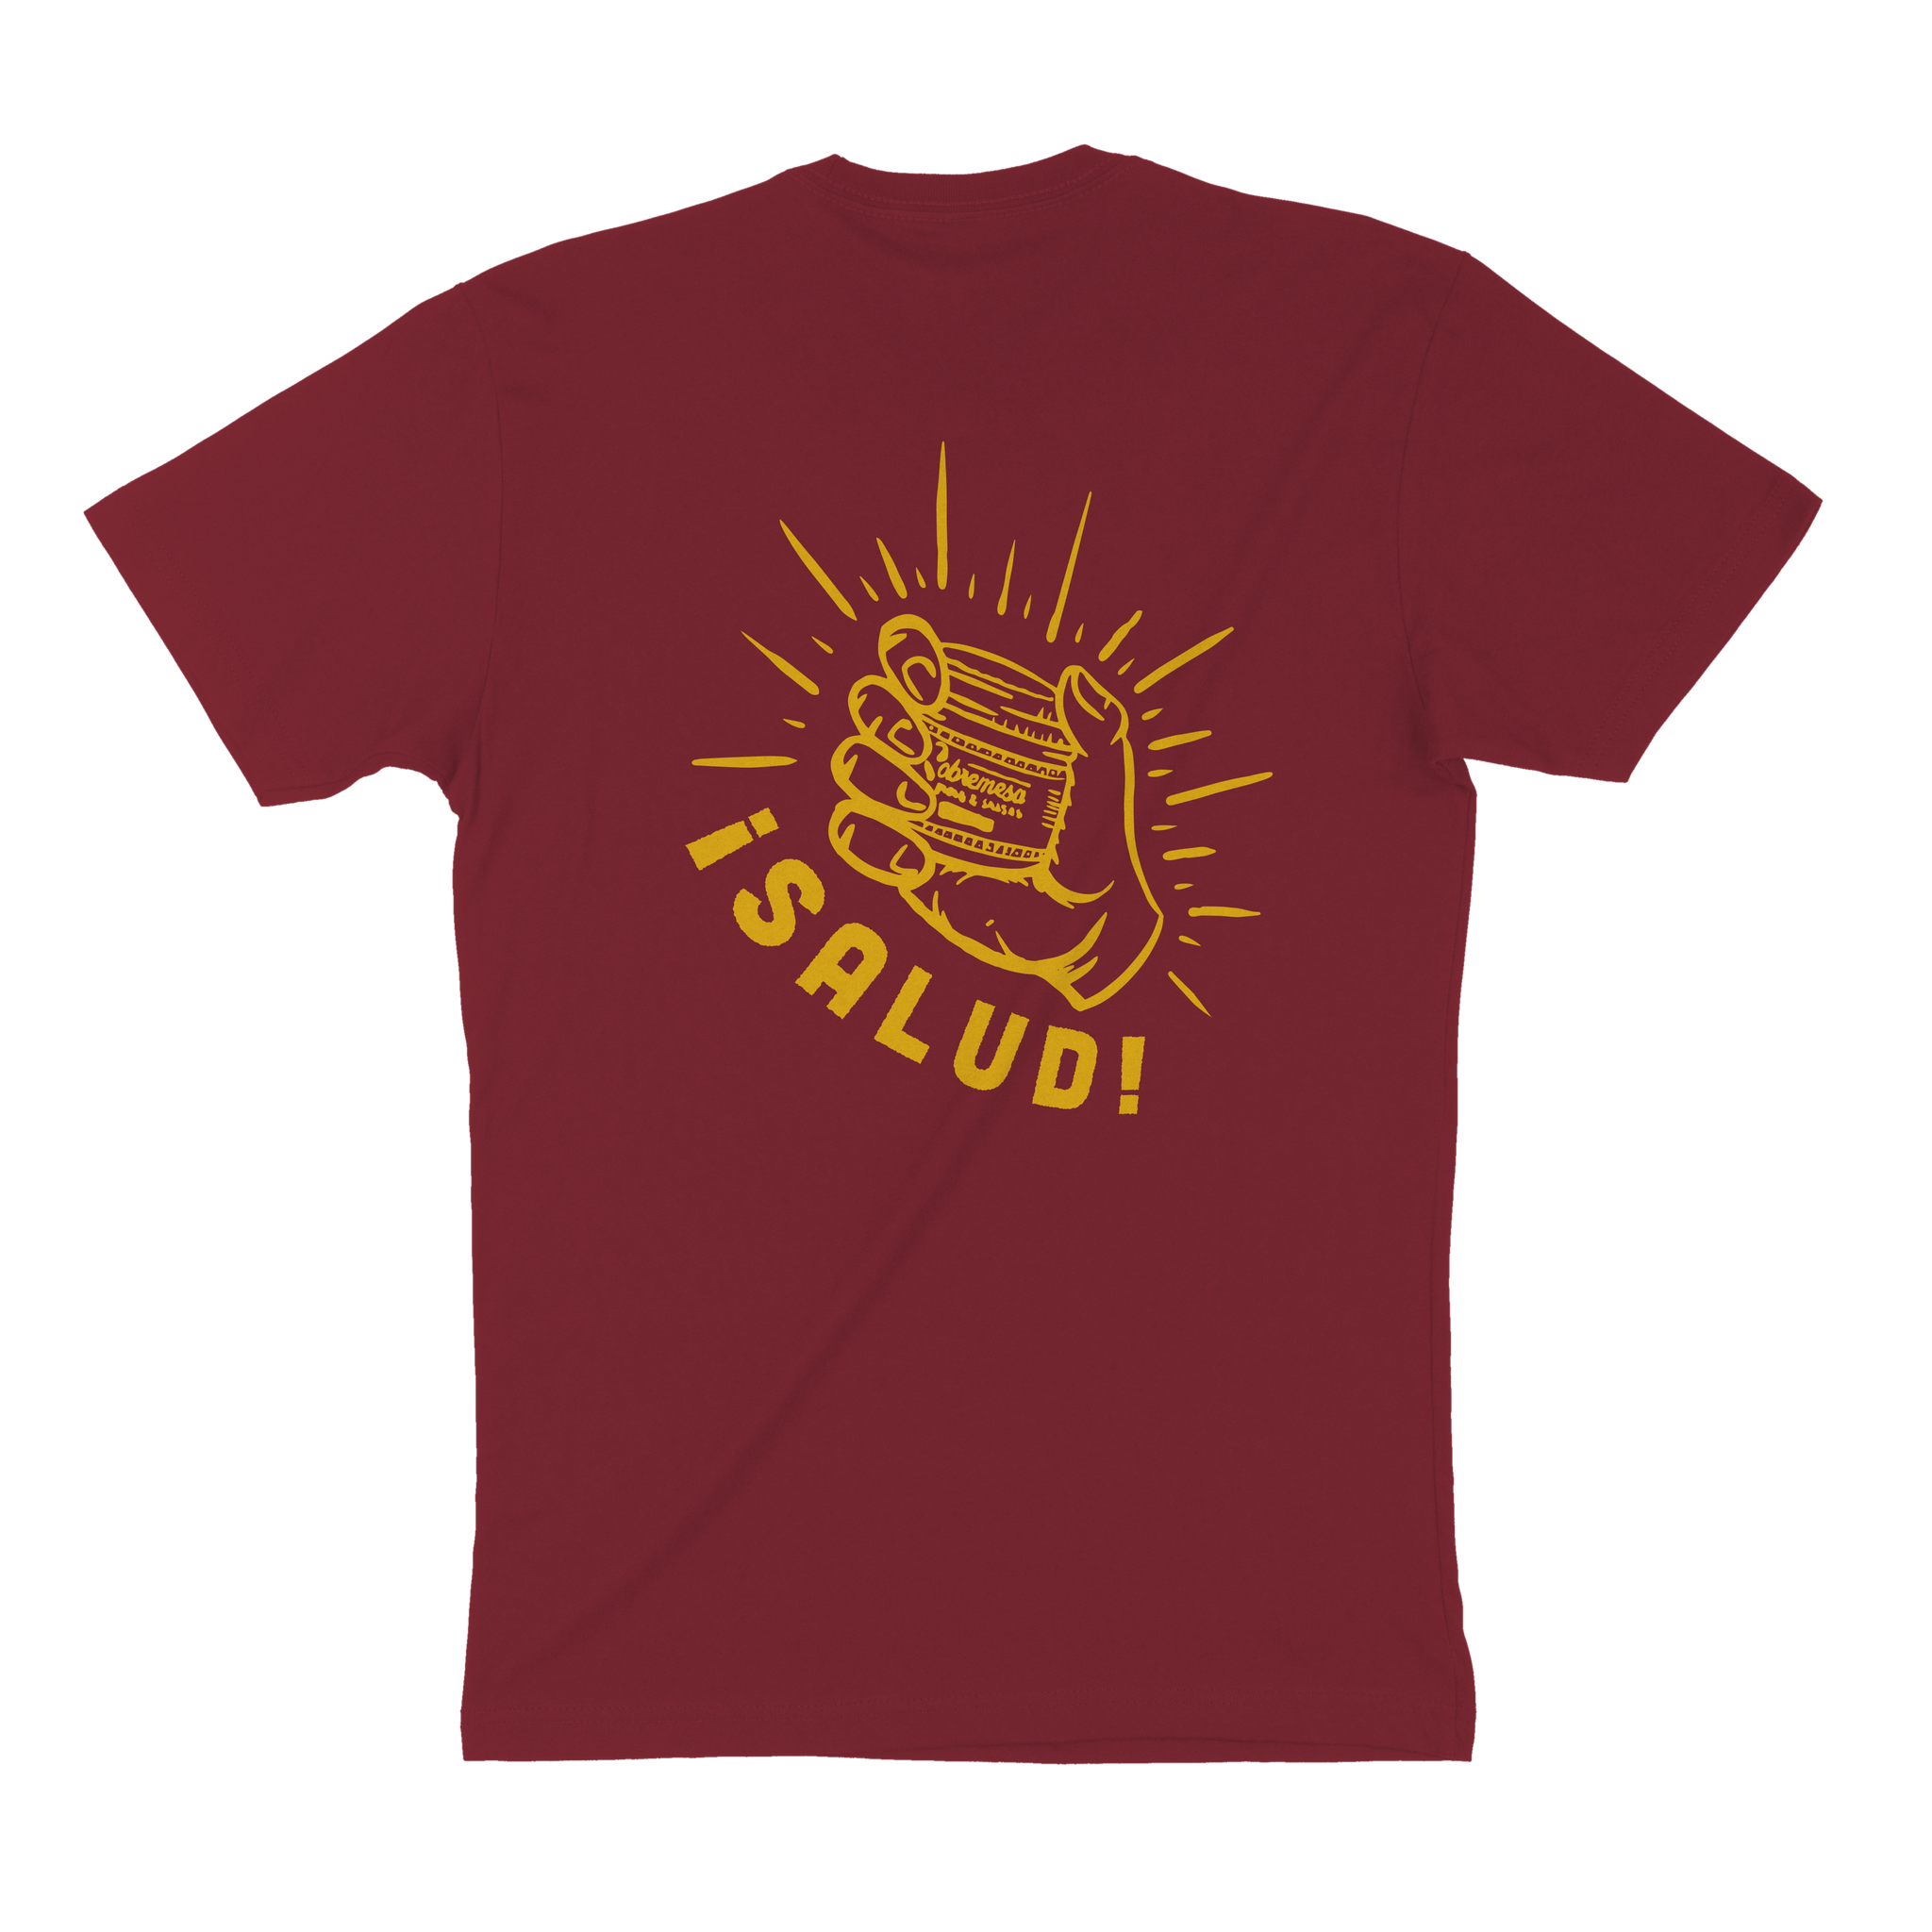 Salud T-Shirt